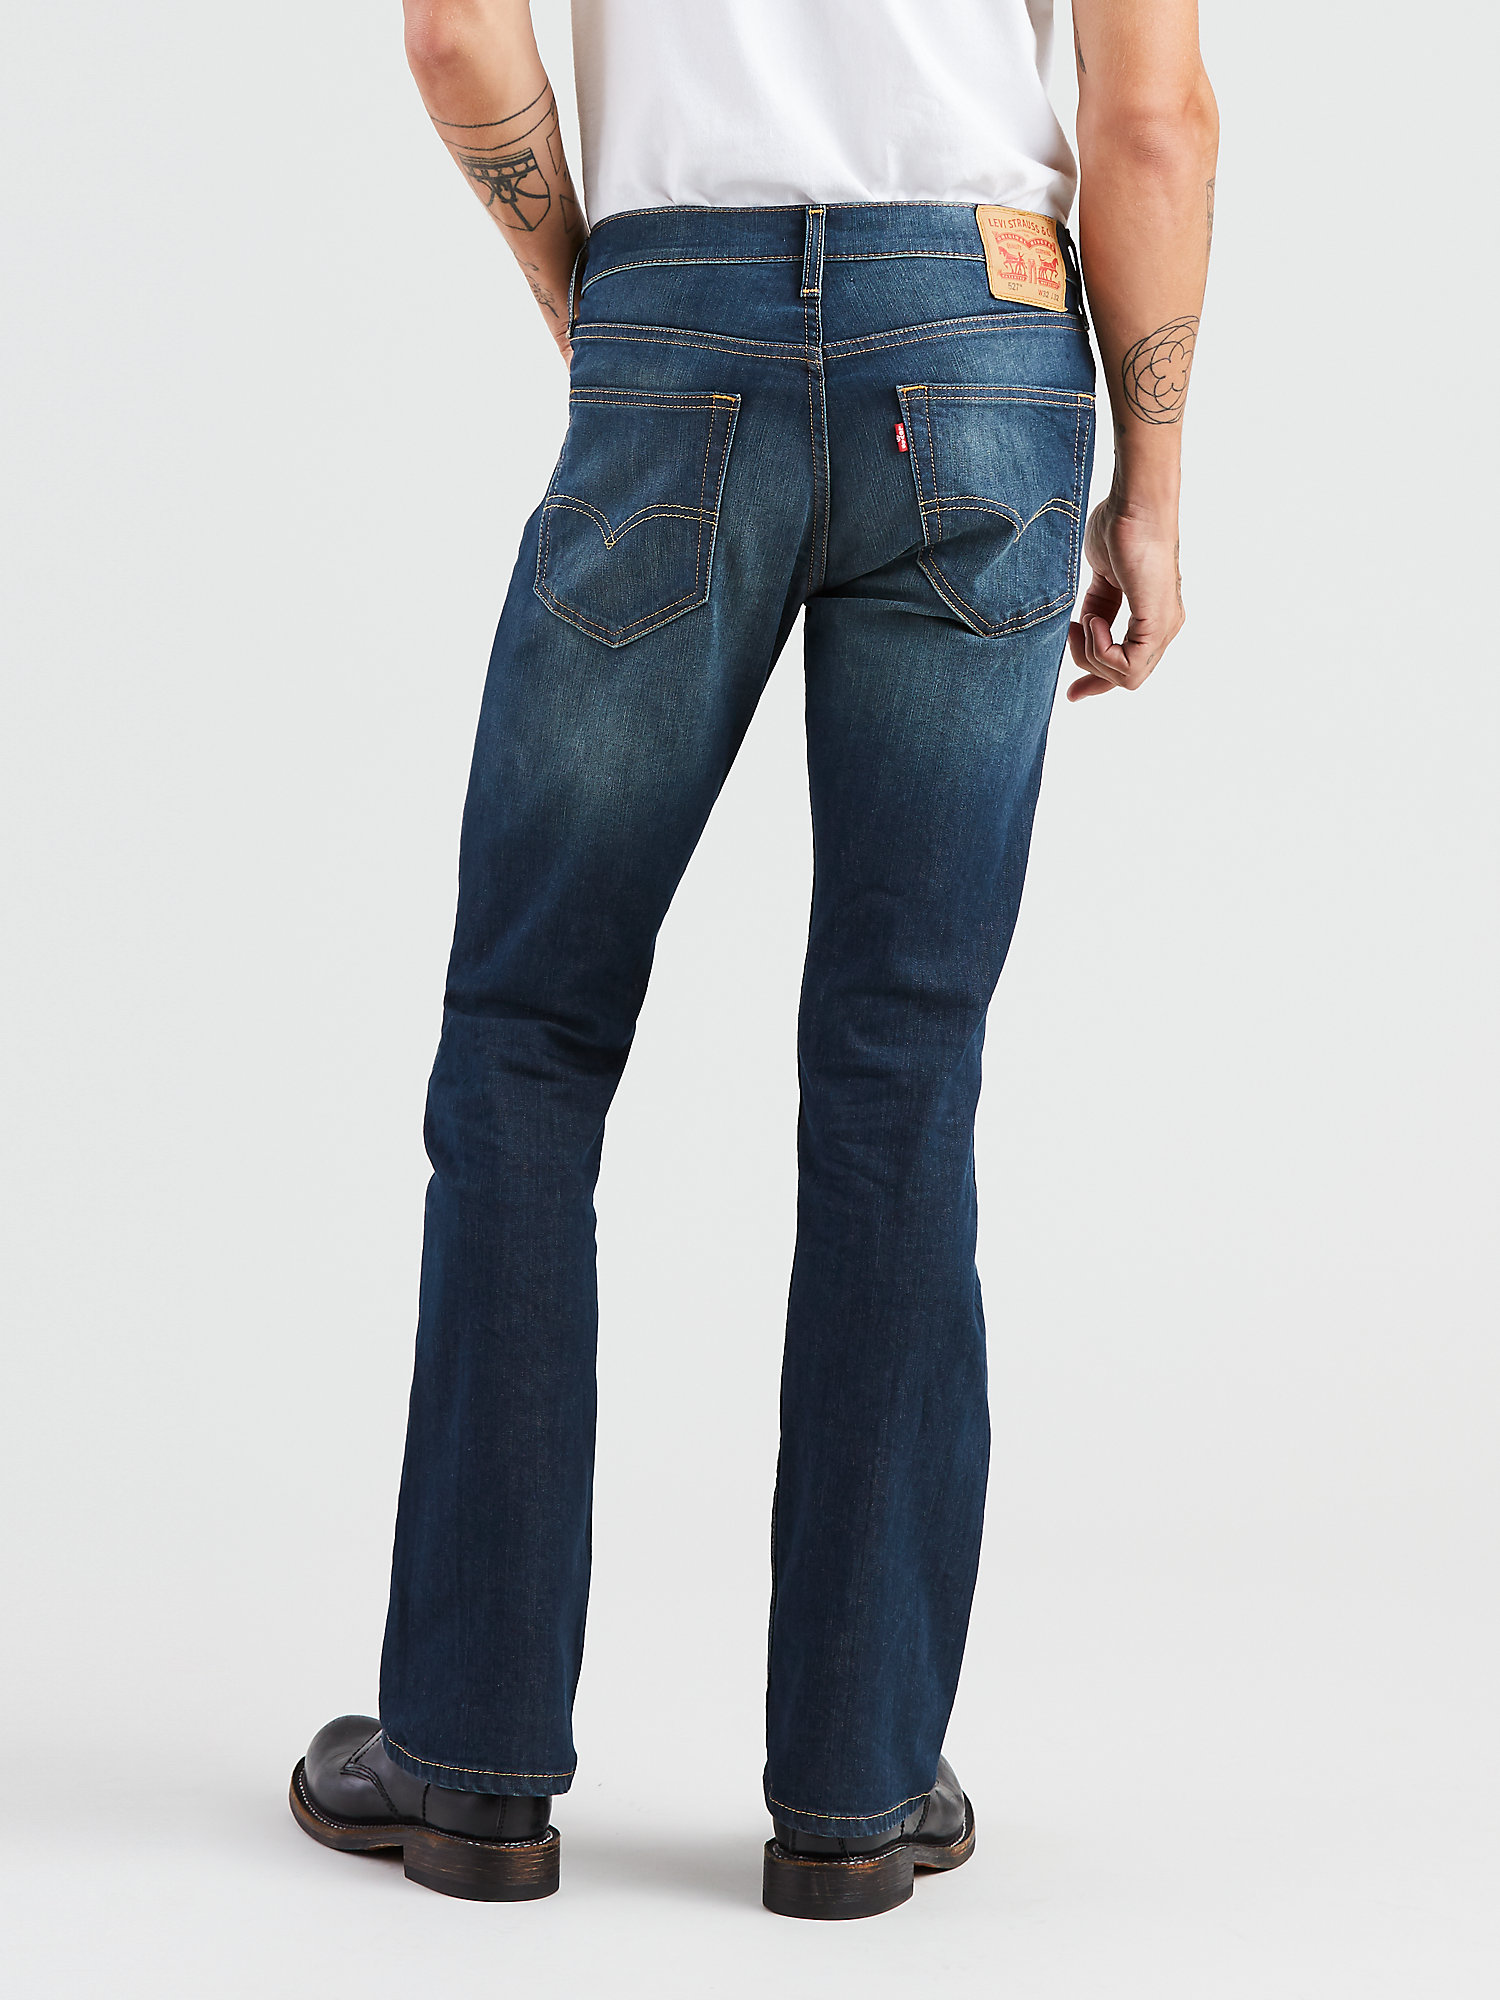 Levi's Men's 527 Slim Boot Cut Fit Jeans - image 5 of 7